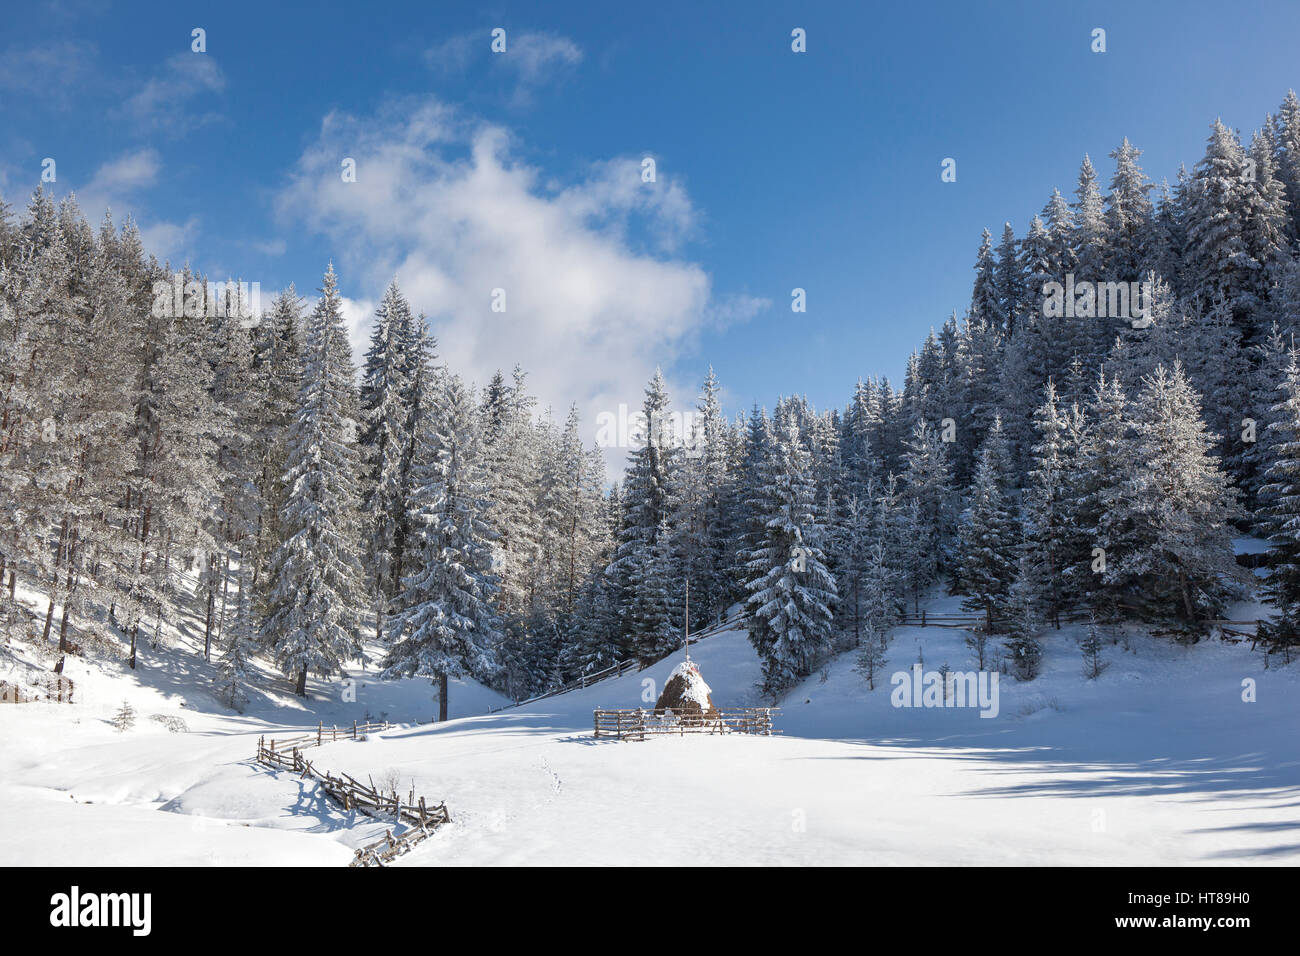 Paysage d'hiver enneigé avec des pins et une botte de couvert de neige dans une petite clairière. Banque D'Images